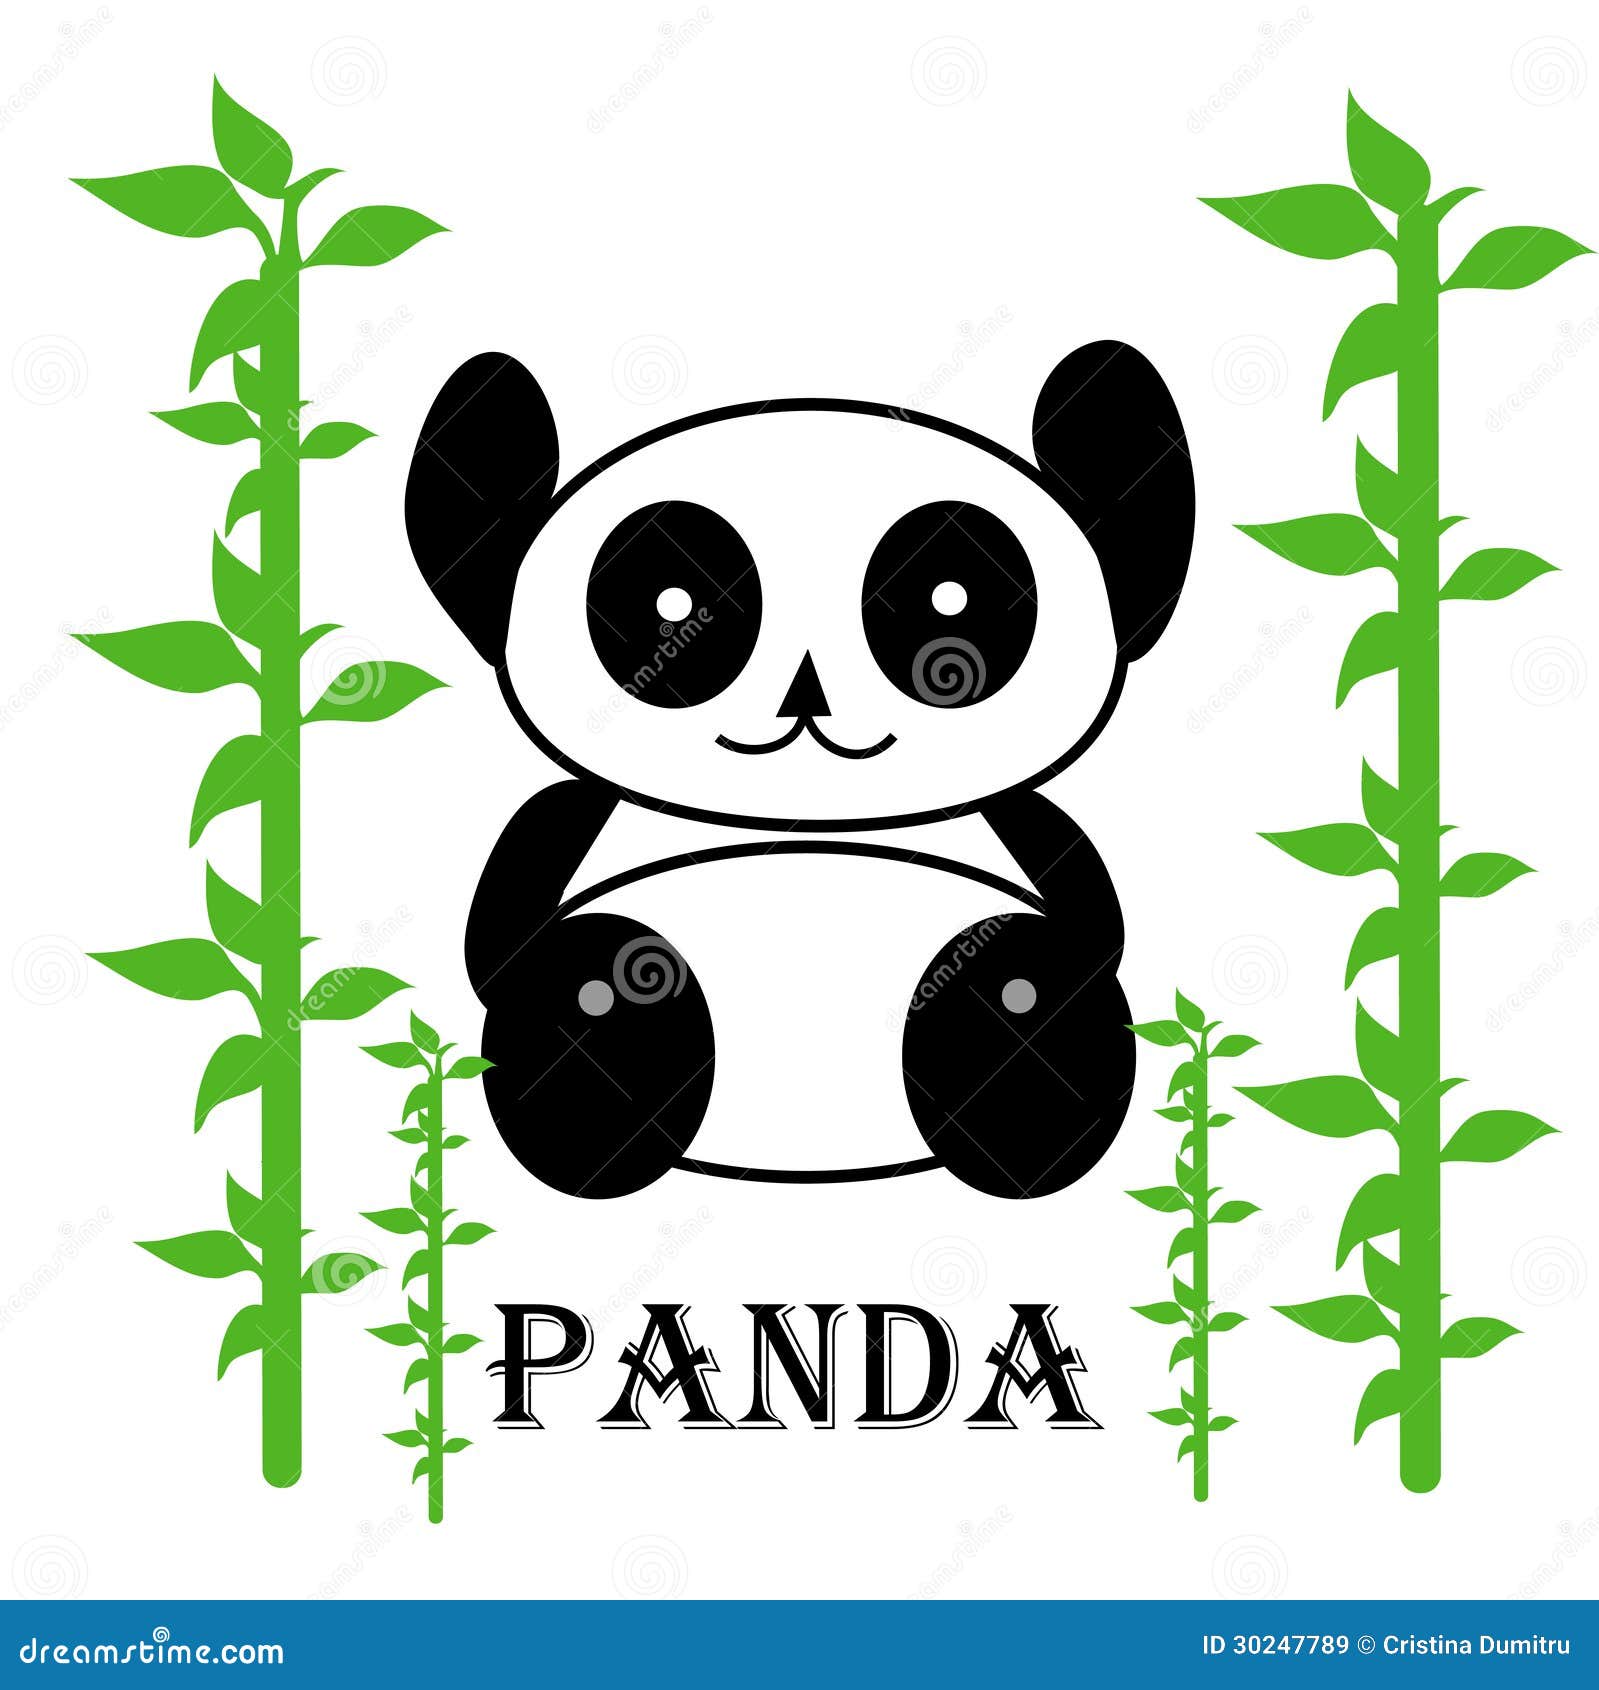 clipart panda tree - photo #15